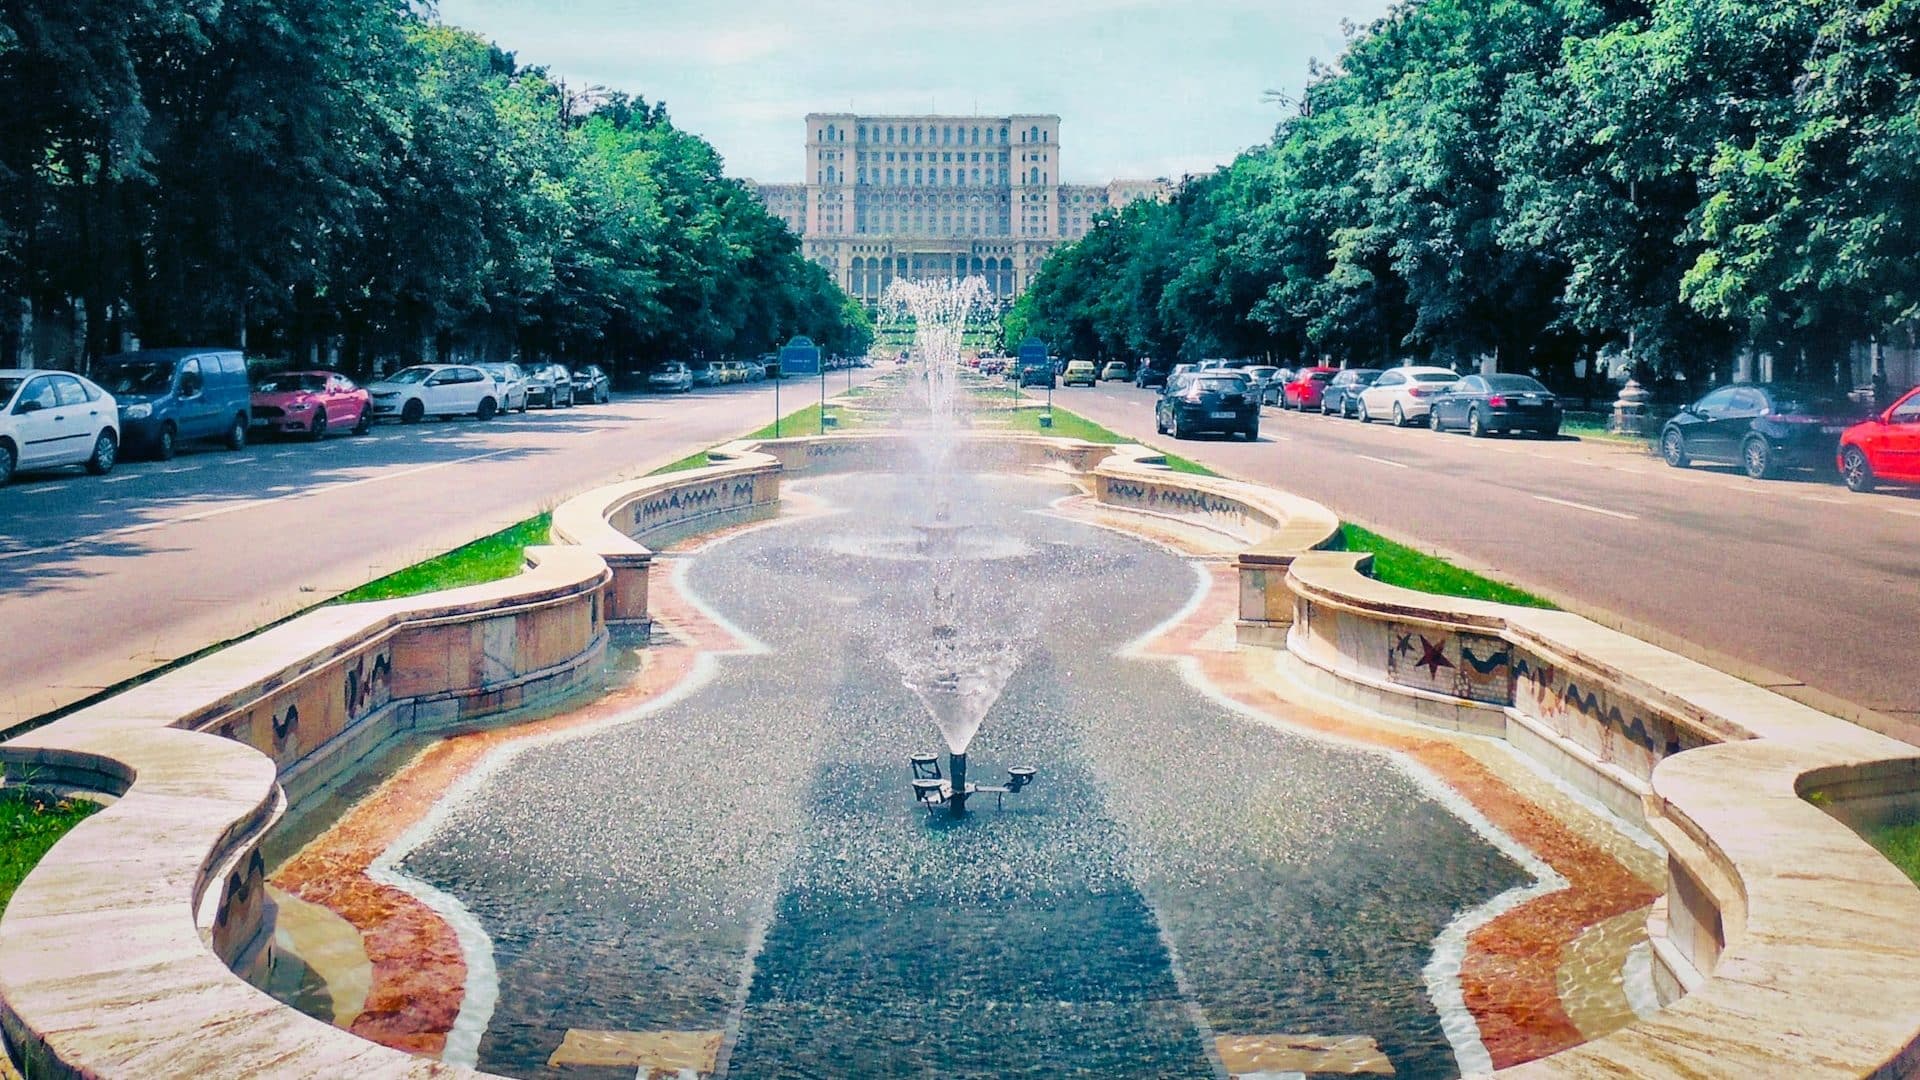 Situati nel cuore della città, il Viale Unirii e la zona del Palazzo del Parlamento sono tra le migliori posizioni a Bucarest per i turisti